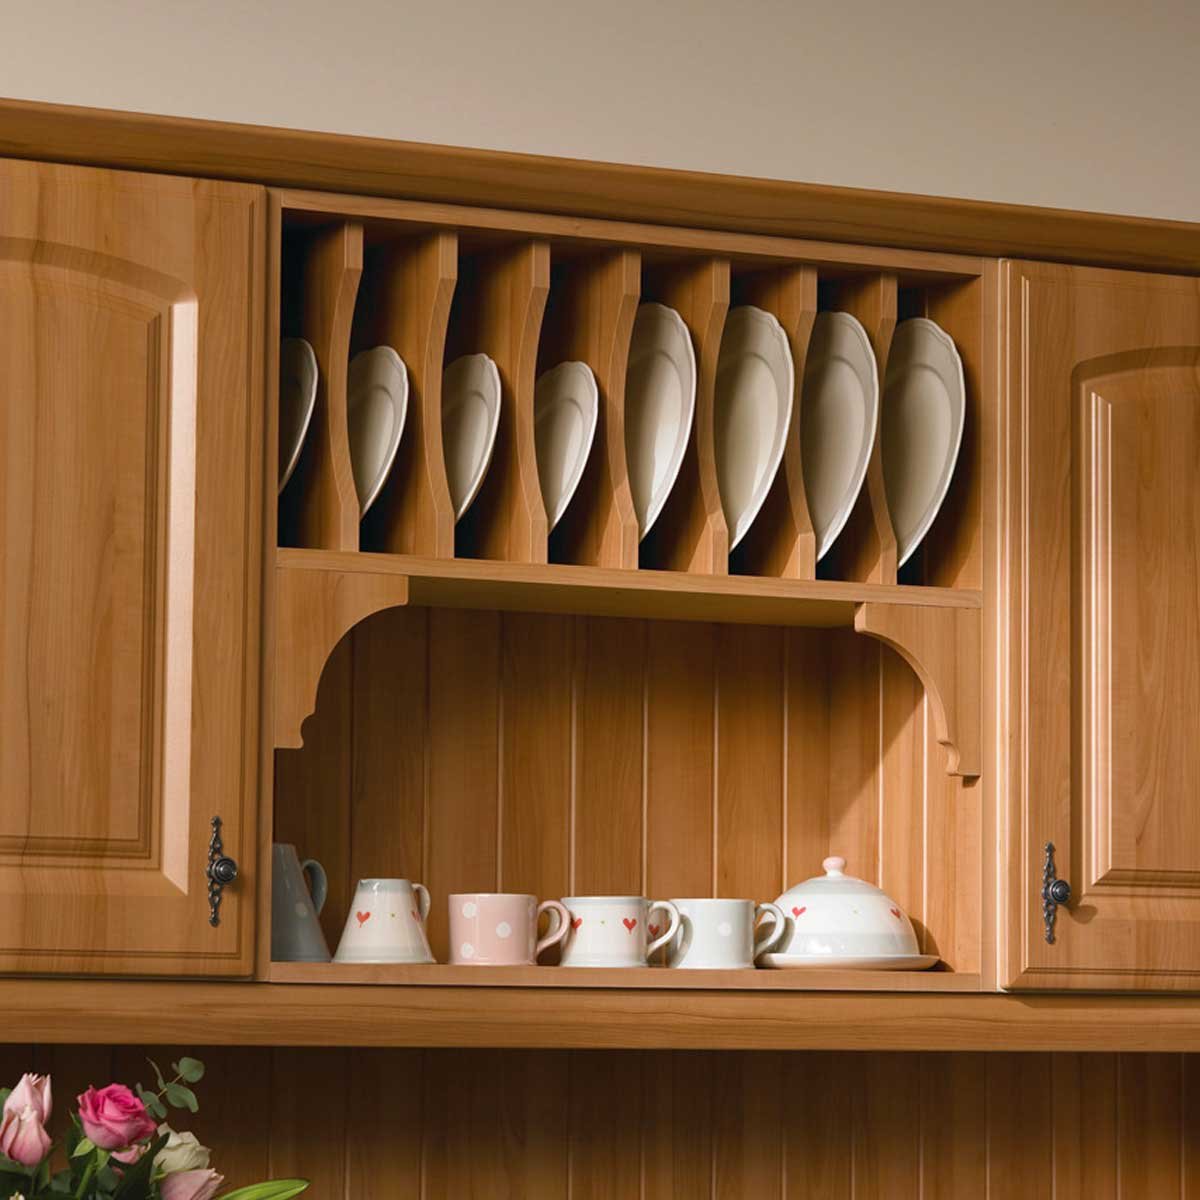 Полочка для посуды. Полки под посуду на кухню. Навесные шкафы для кухни. Шкаф навесной для кухни с сушилкой. Сушилка для посуды деревянная настенная.